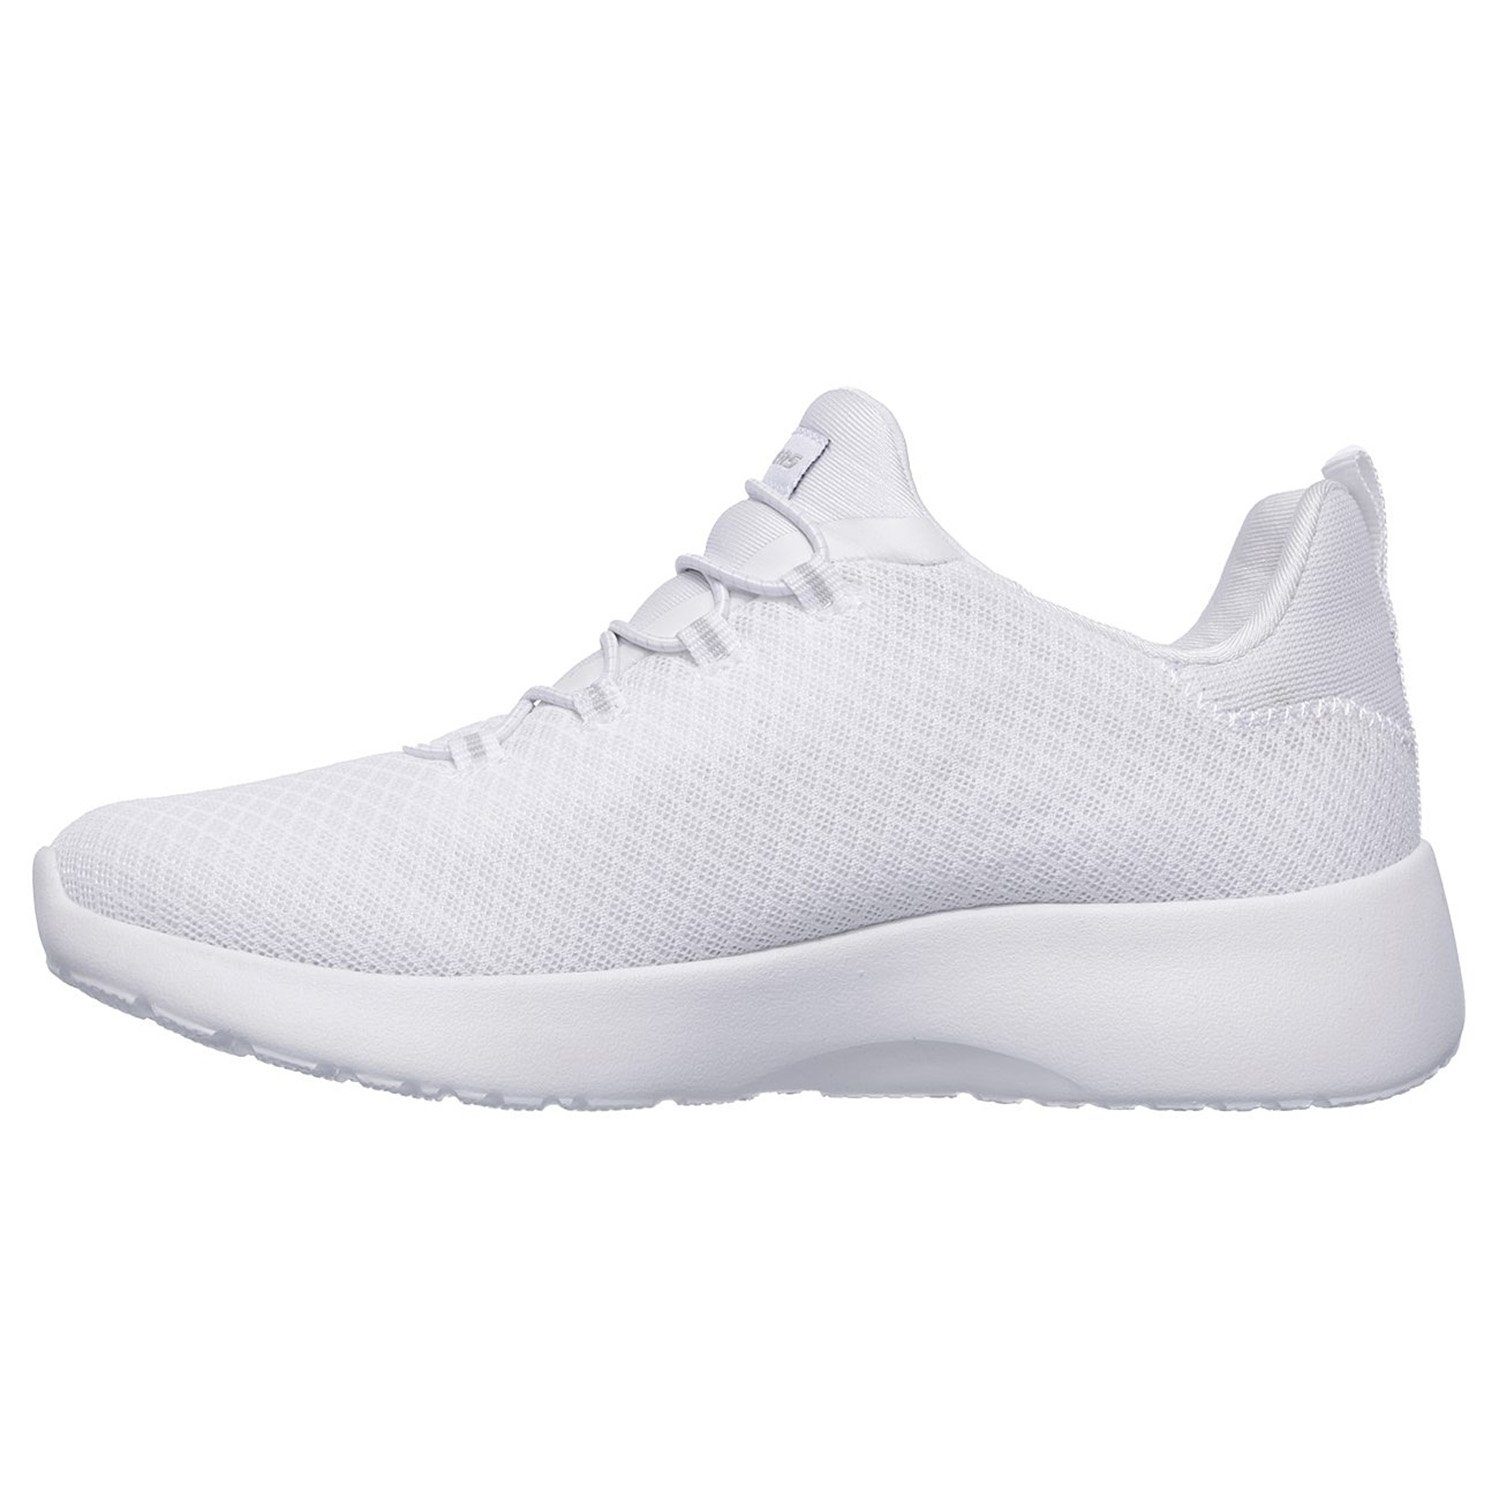 (20202334) Weiß (White) DYNAMIGHT Sneaker Skechers